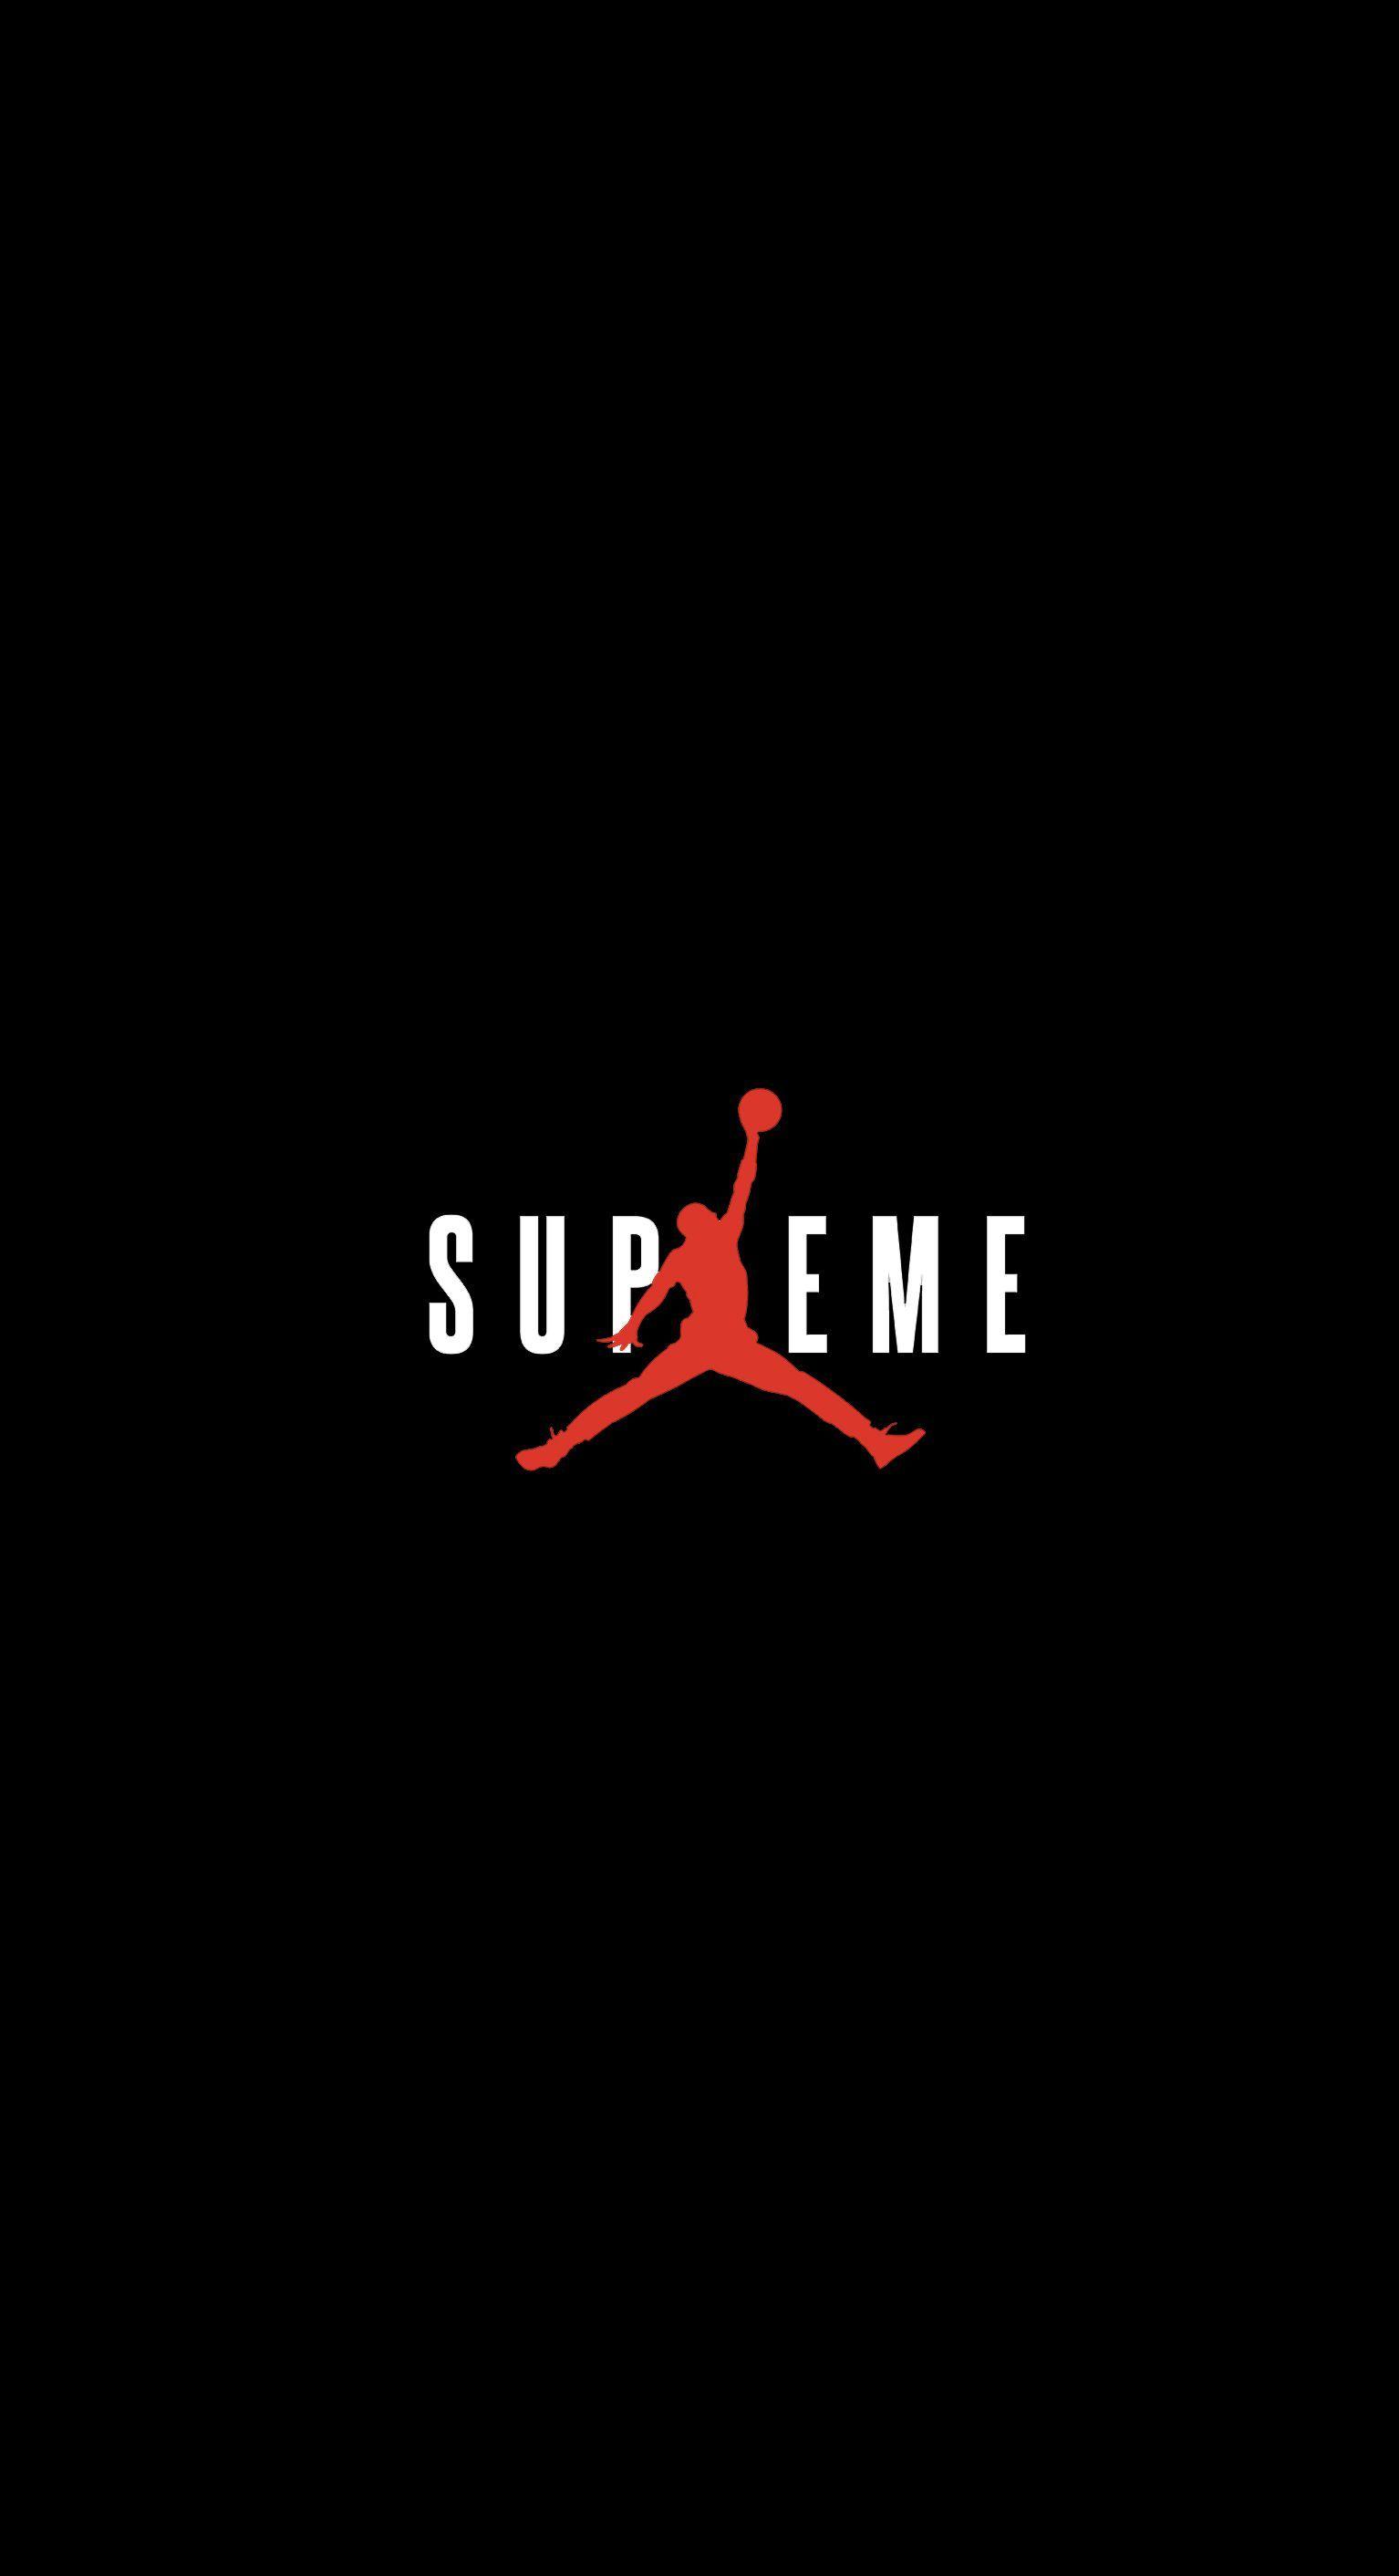 Red and Black Air Jordan Logo - Supreme x Jordan Wallpaper : streetwear - Streetwear Wallpapers ...